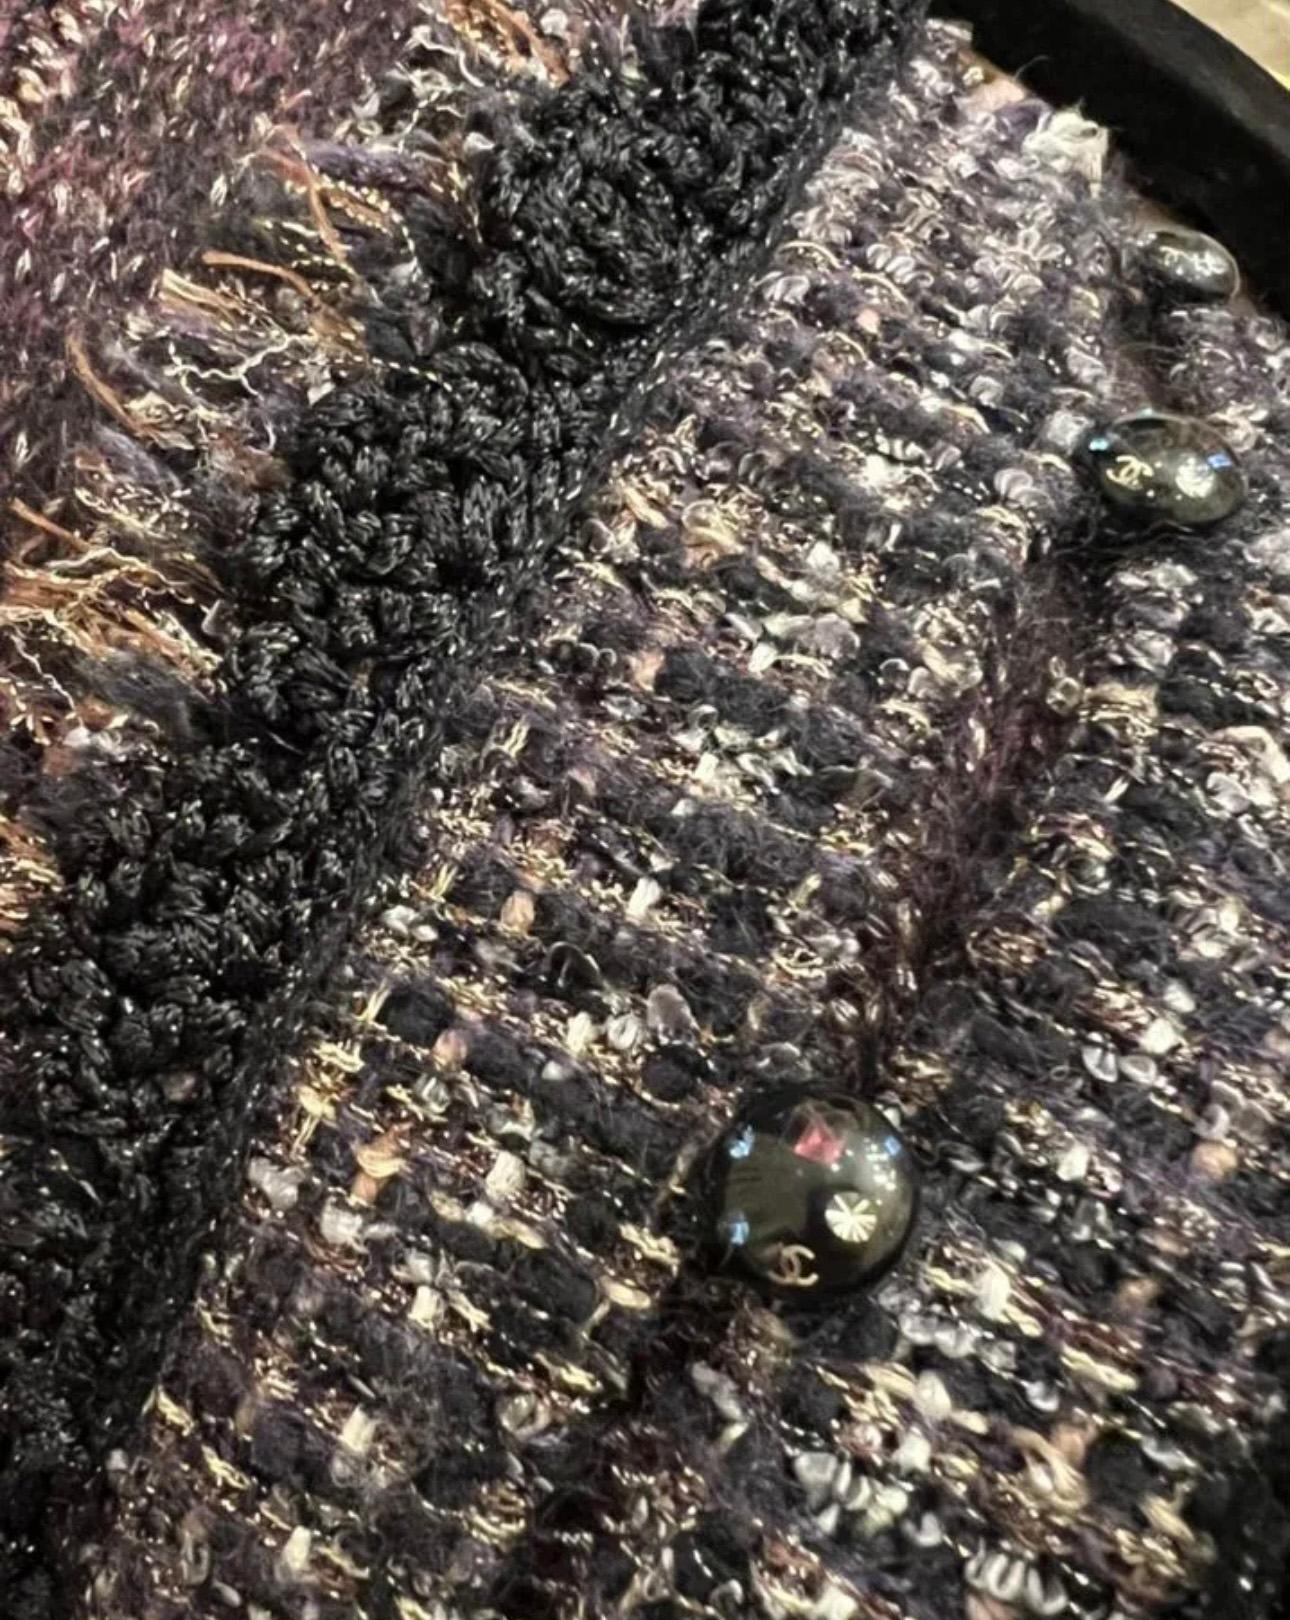 Veste en cachemire Chanel avec accents de tweed tissé et boutons portant le logo CC.
Taille 40 FR. État impeccable.